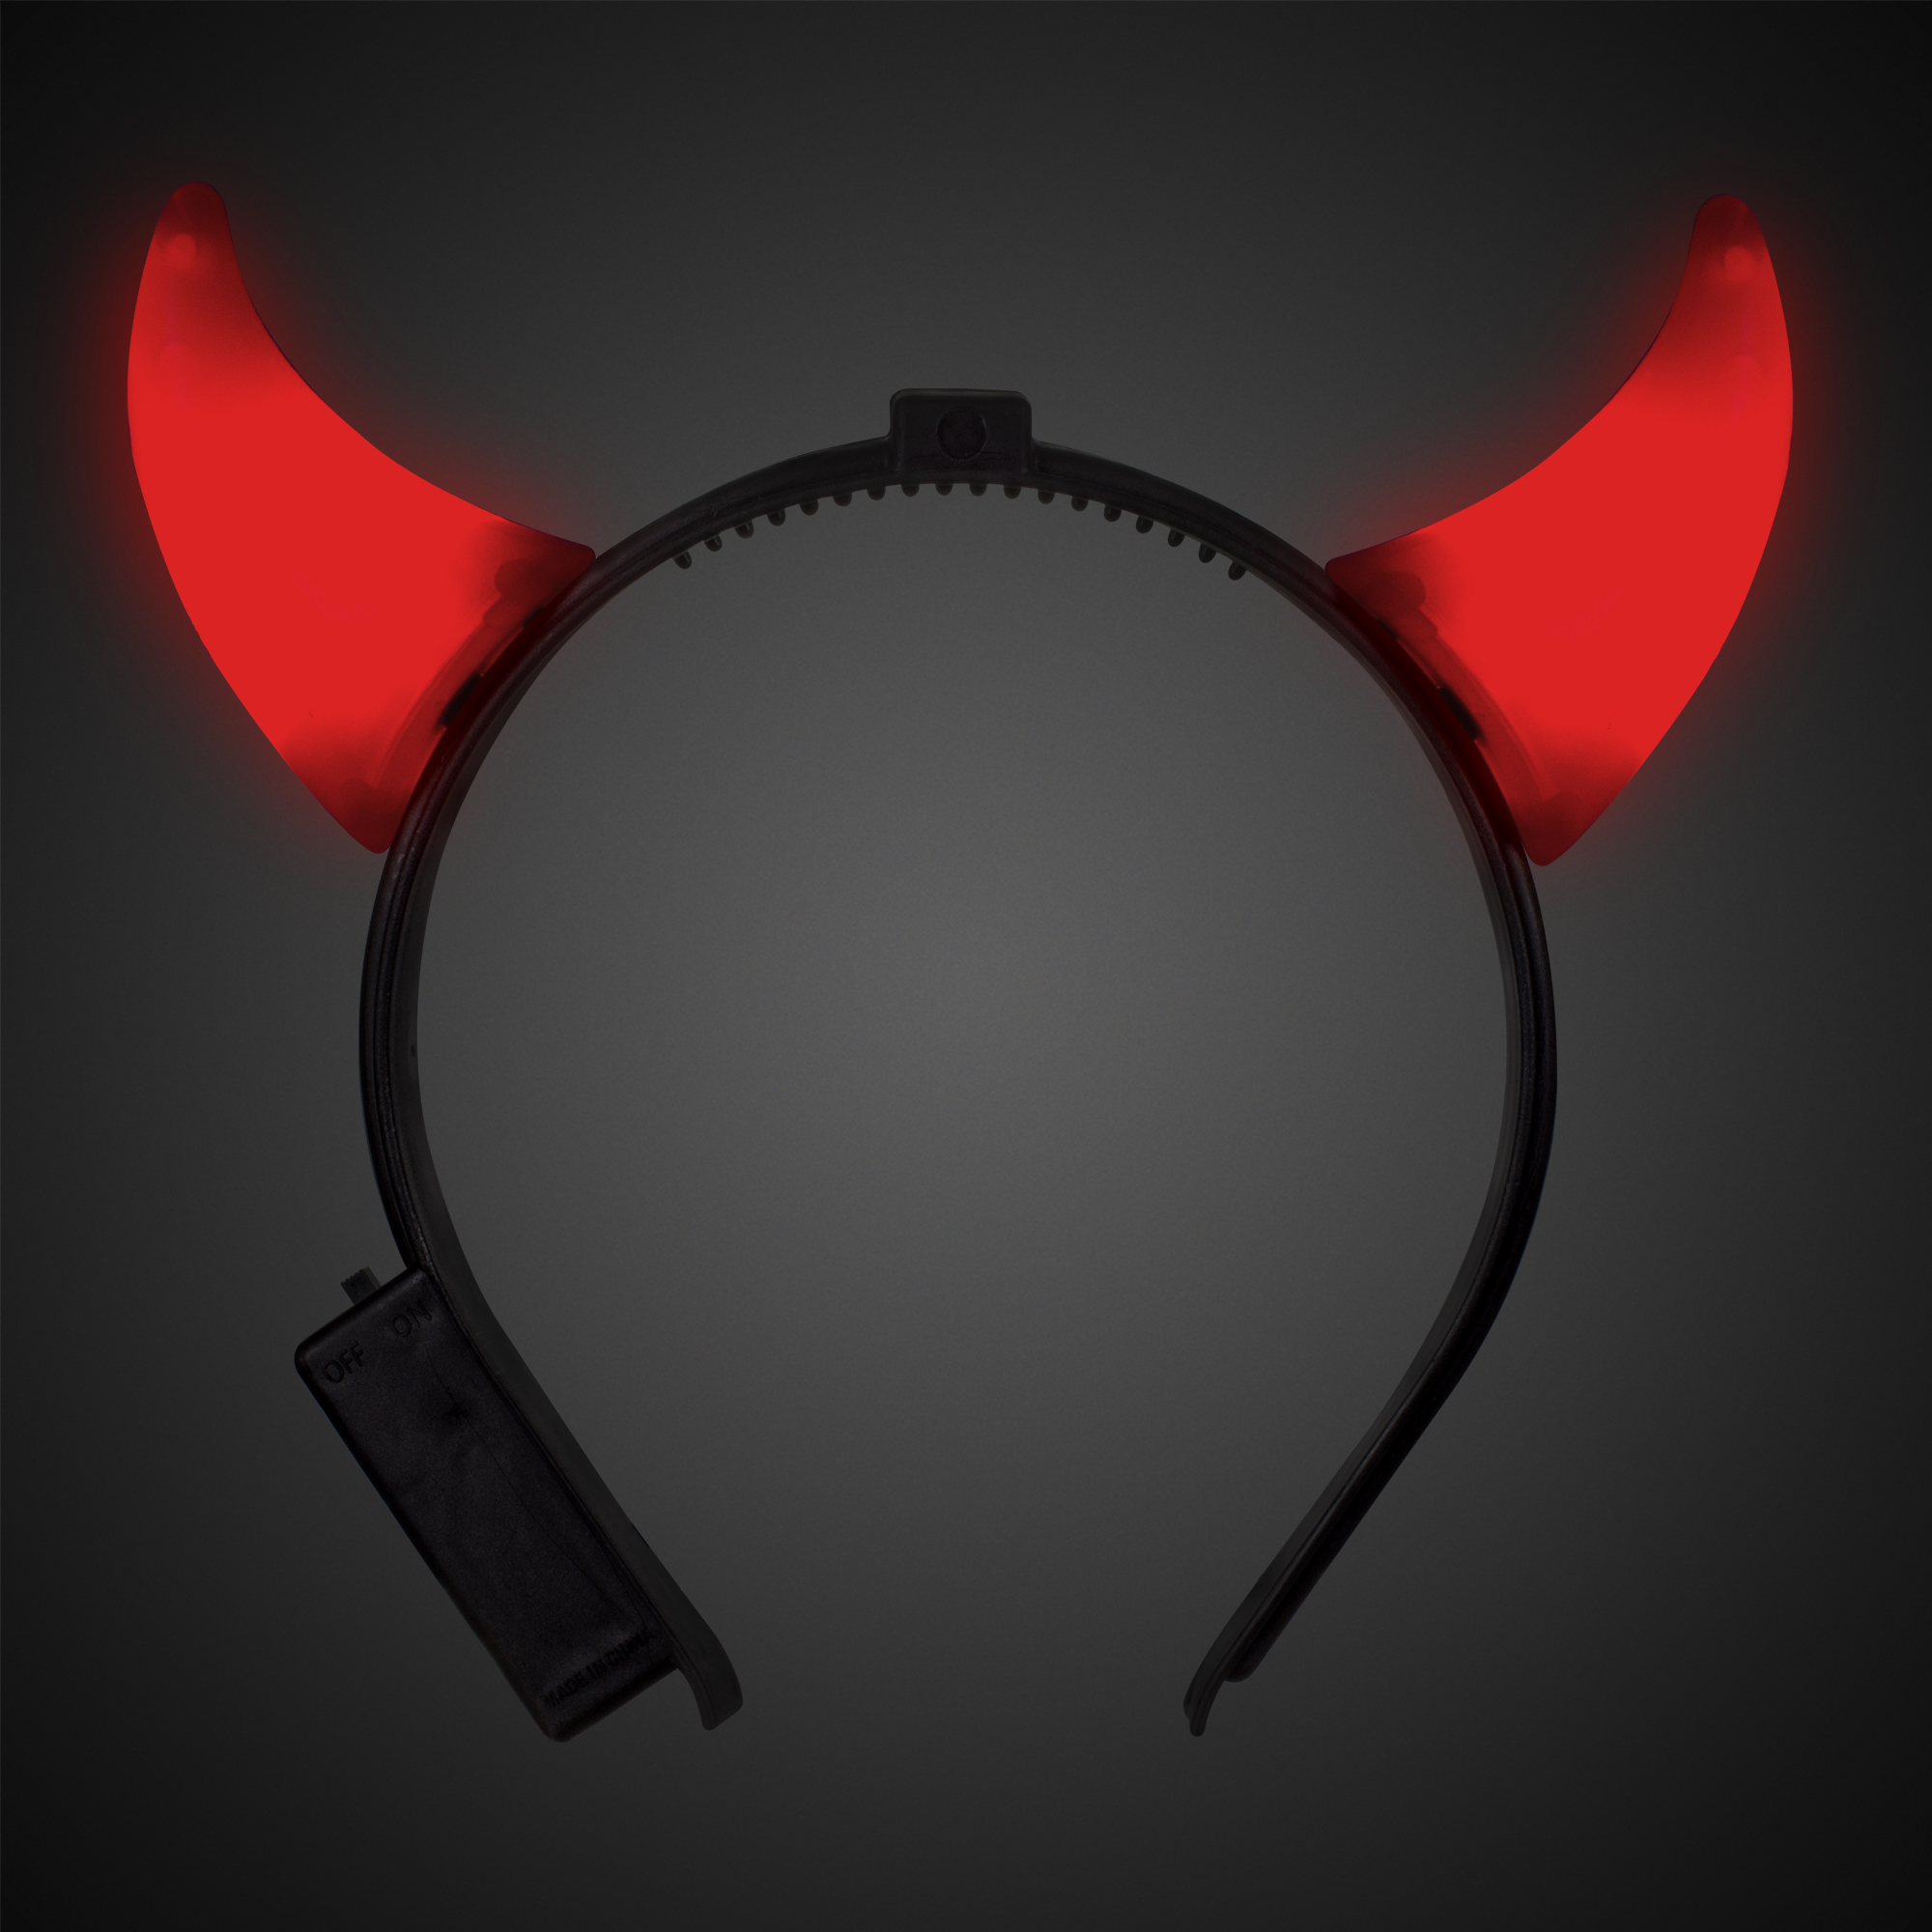 Light Up Devil Horn Starlight Red Headband for Halloween 